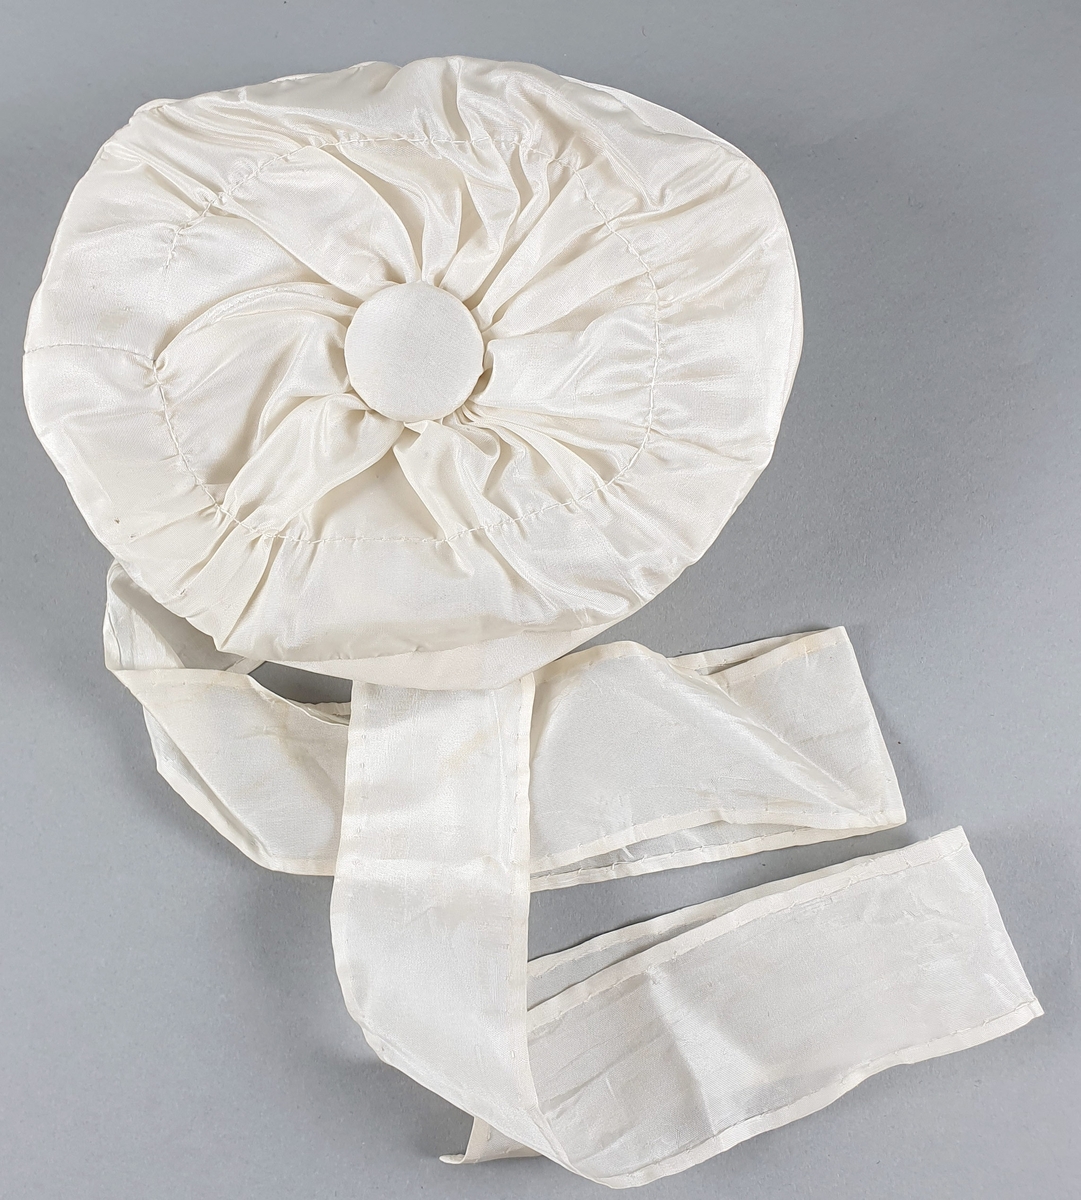 Hvit babylue av silke med lange bånd til å knyte under haken. Stor knapp på toppen og bånd rundt kanten.